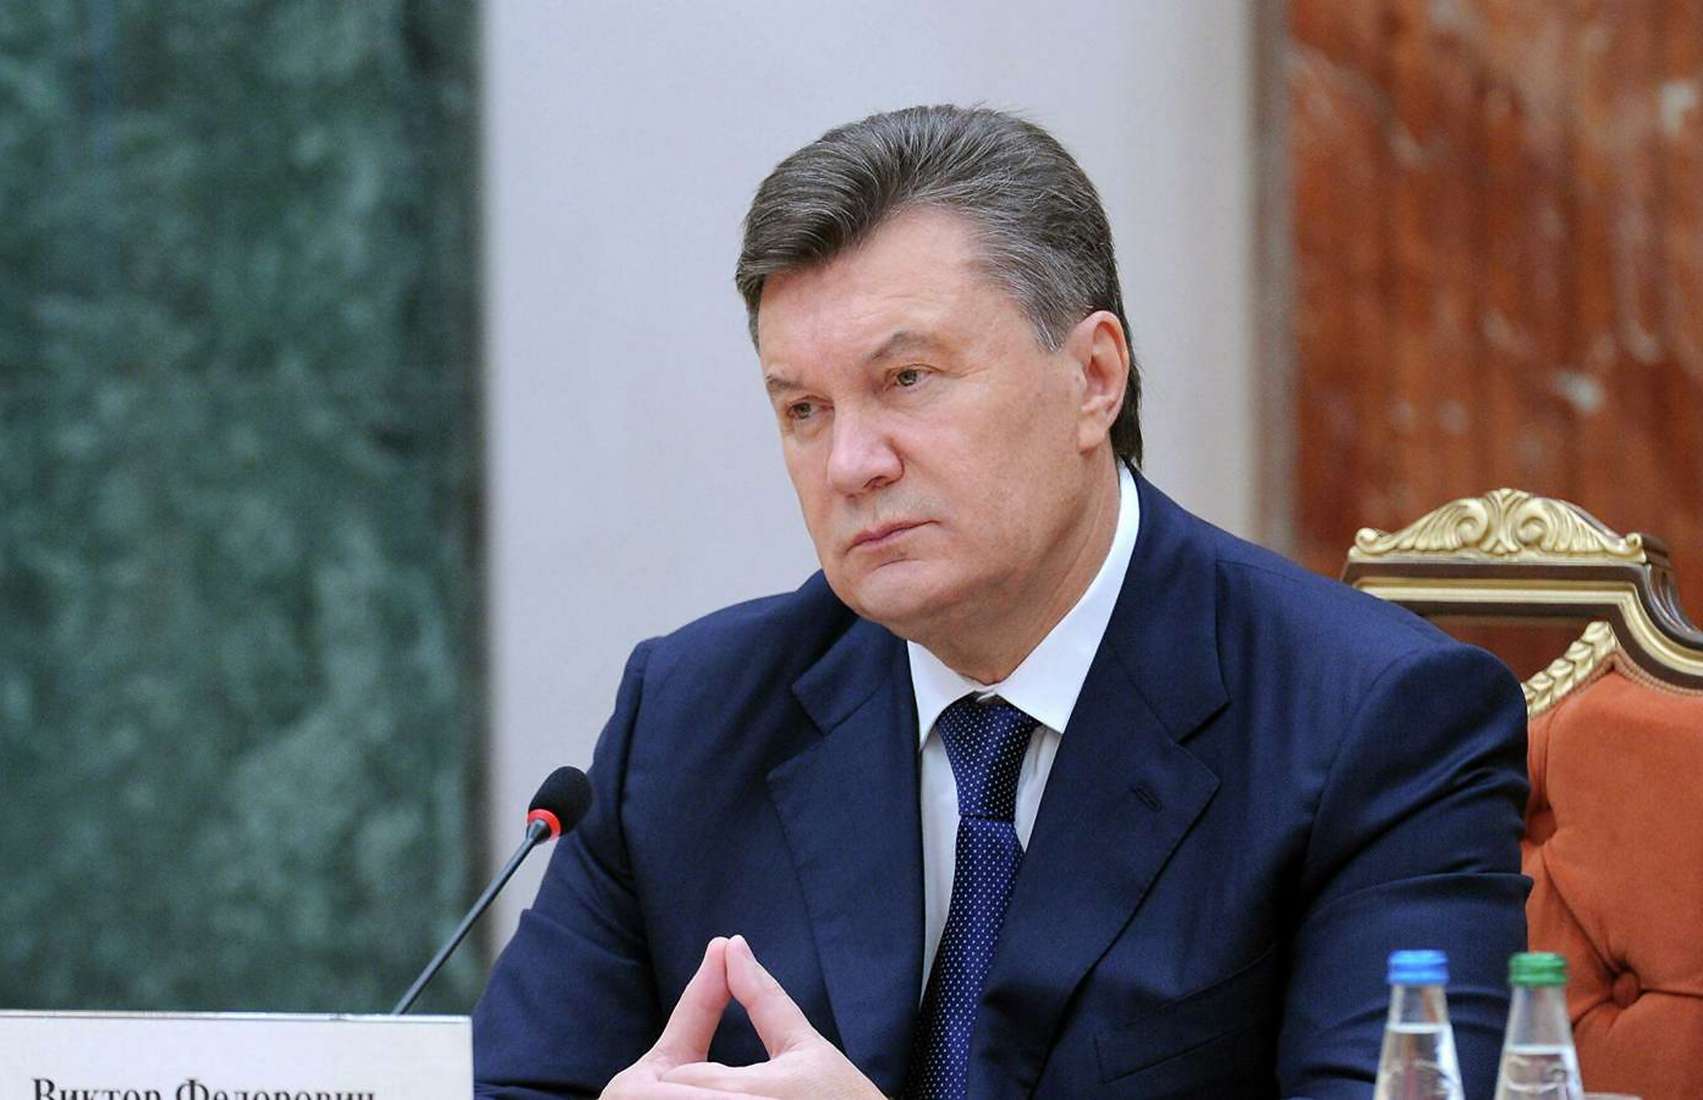 Все указы Януковича проверят на предмет угрозы безопасности